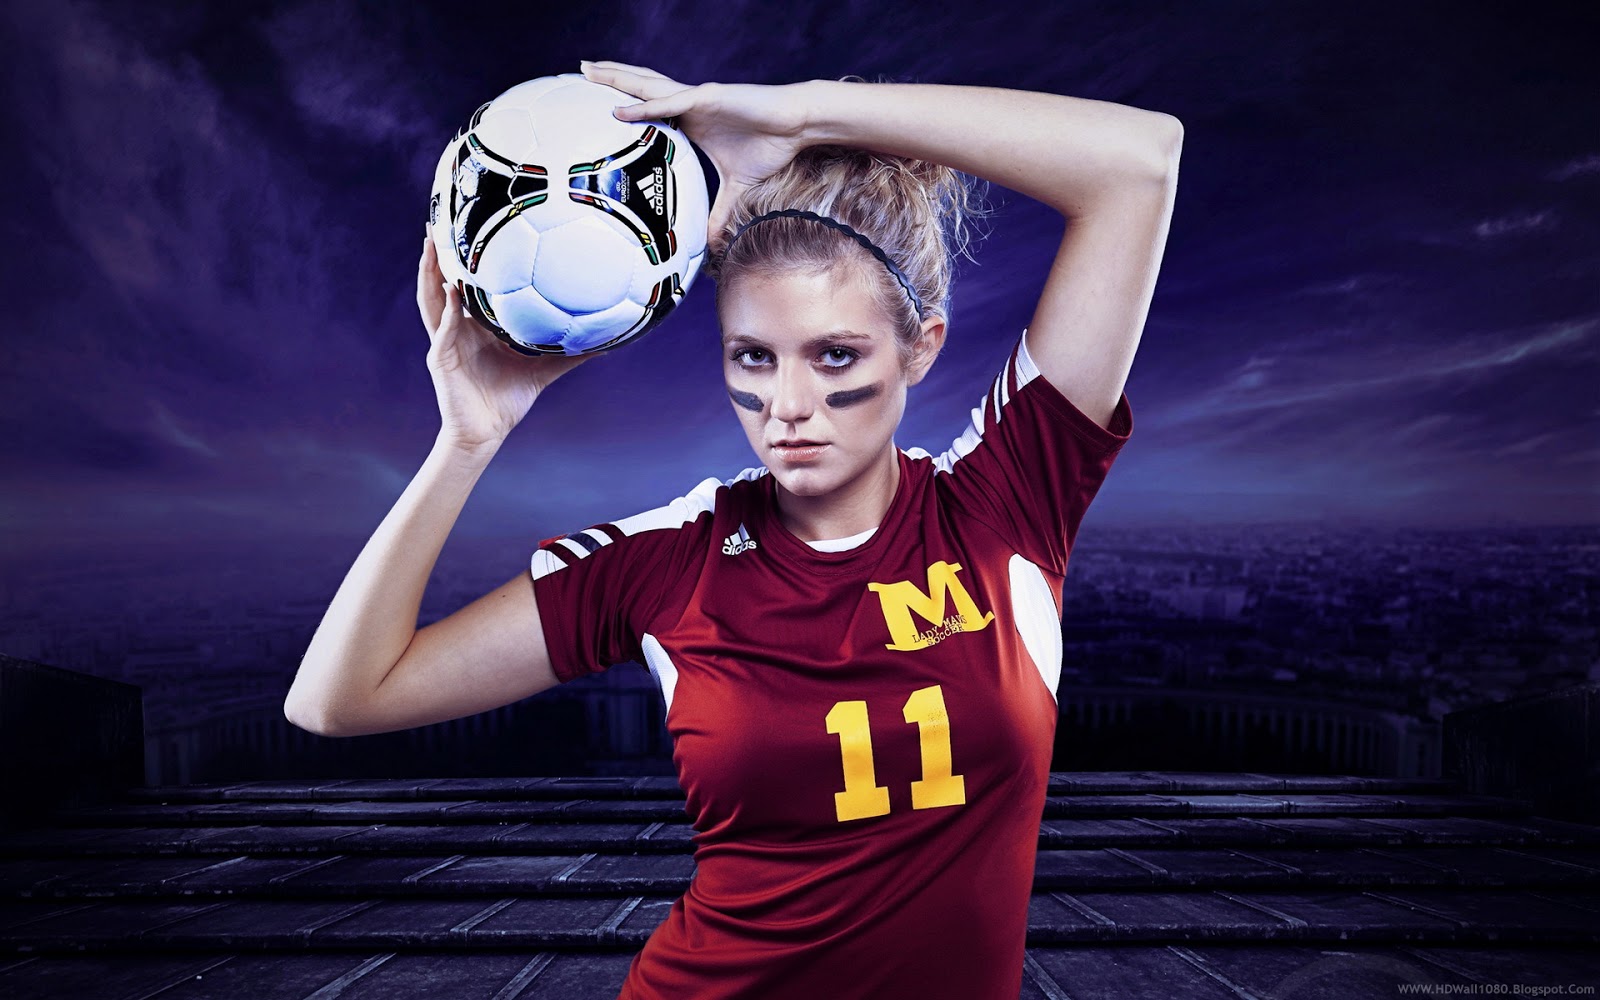 fondo de pantalla de chica de fútbol,jugador de fútbol,fútbol femenino,jugador,fútbol americano,fotografía con flash